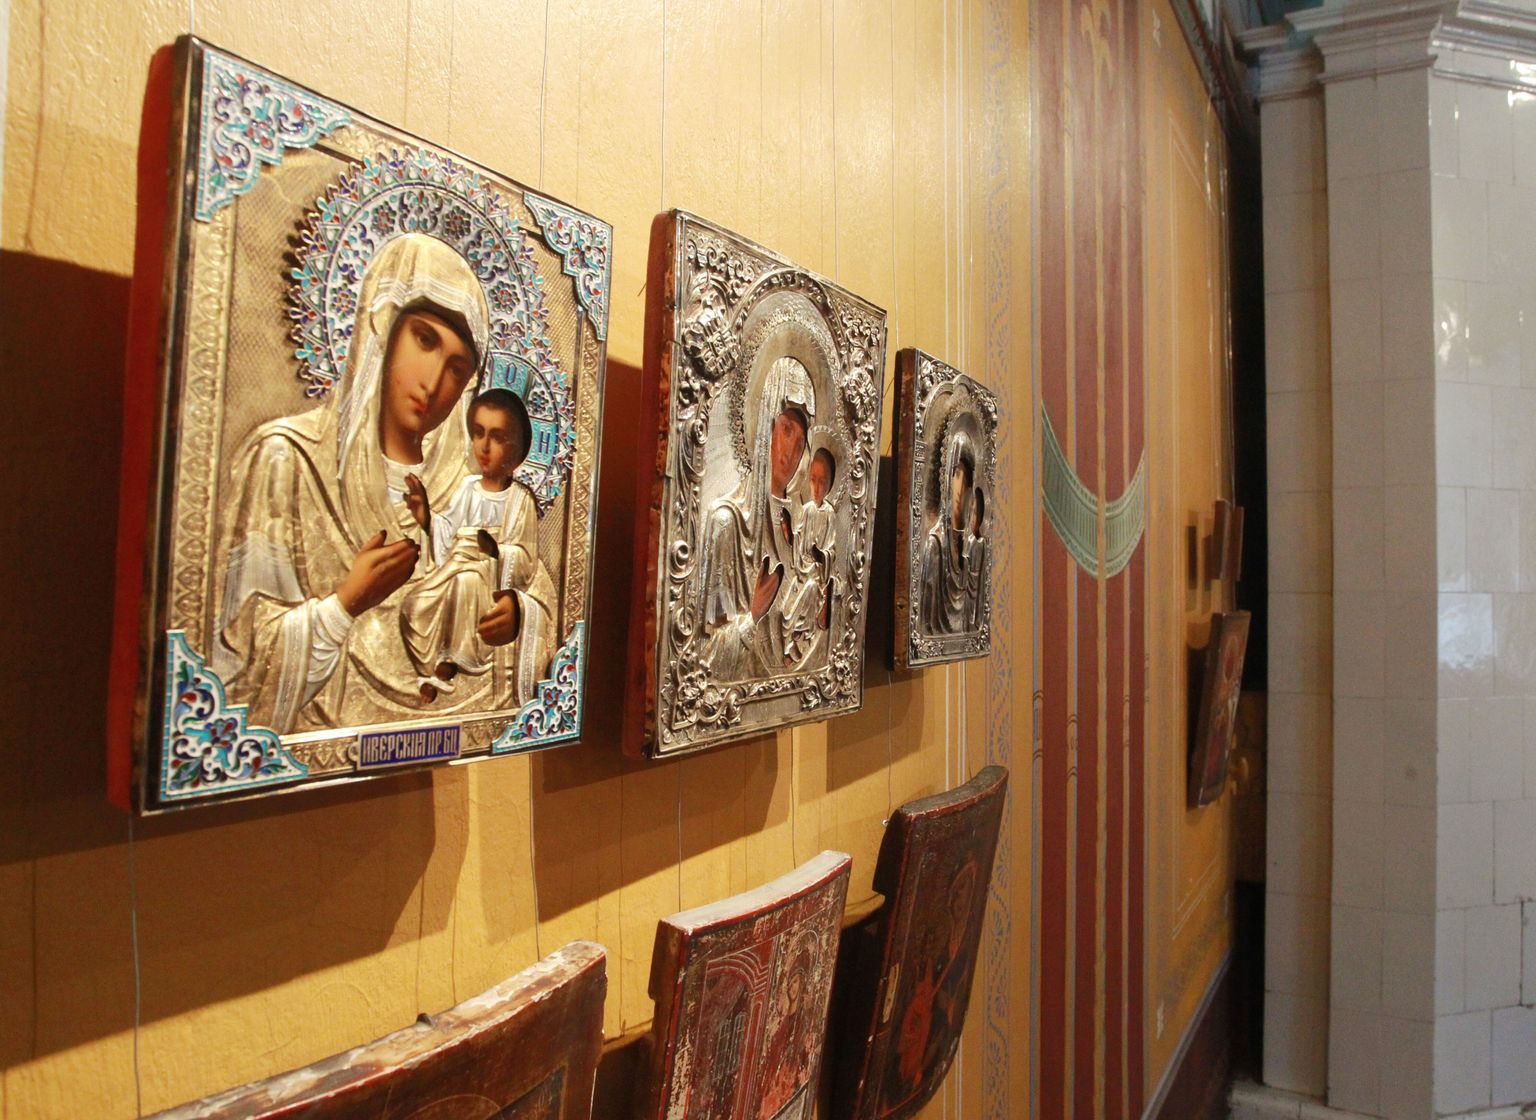 Näituseruumi siseneja vasakule käele jääb kuus ikooni, millest ülemises reas on Ivironi jumalaema (vasakult), Smolenski jumalaema ja Kaasani jumalaema ikoon.